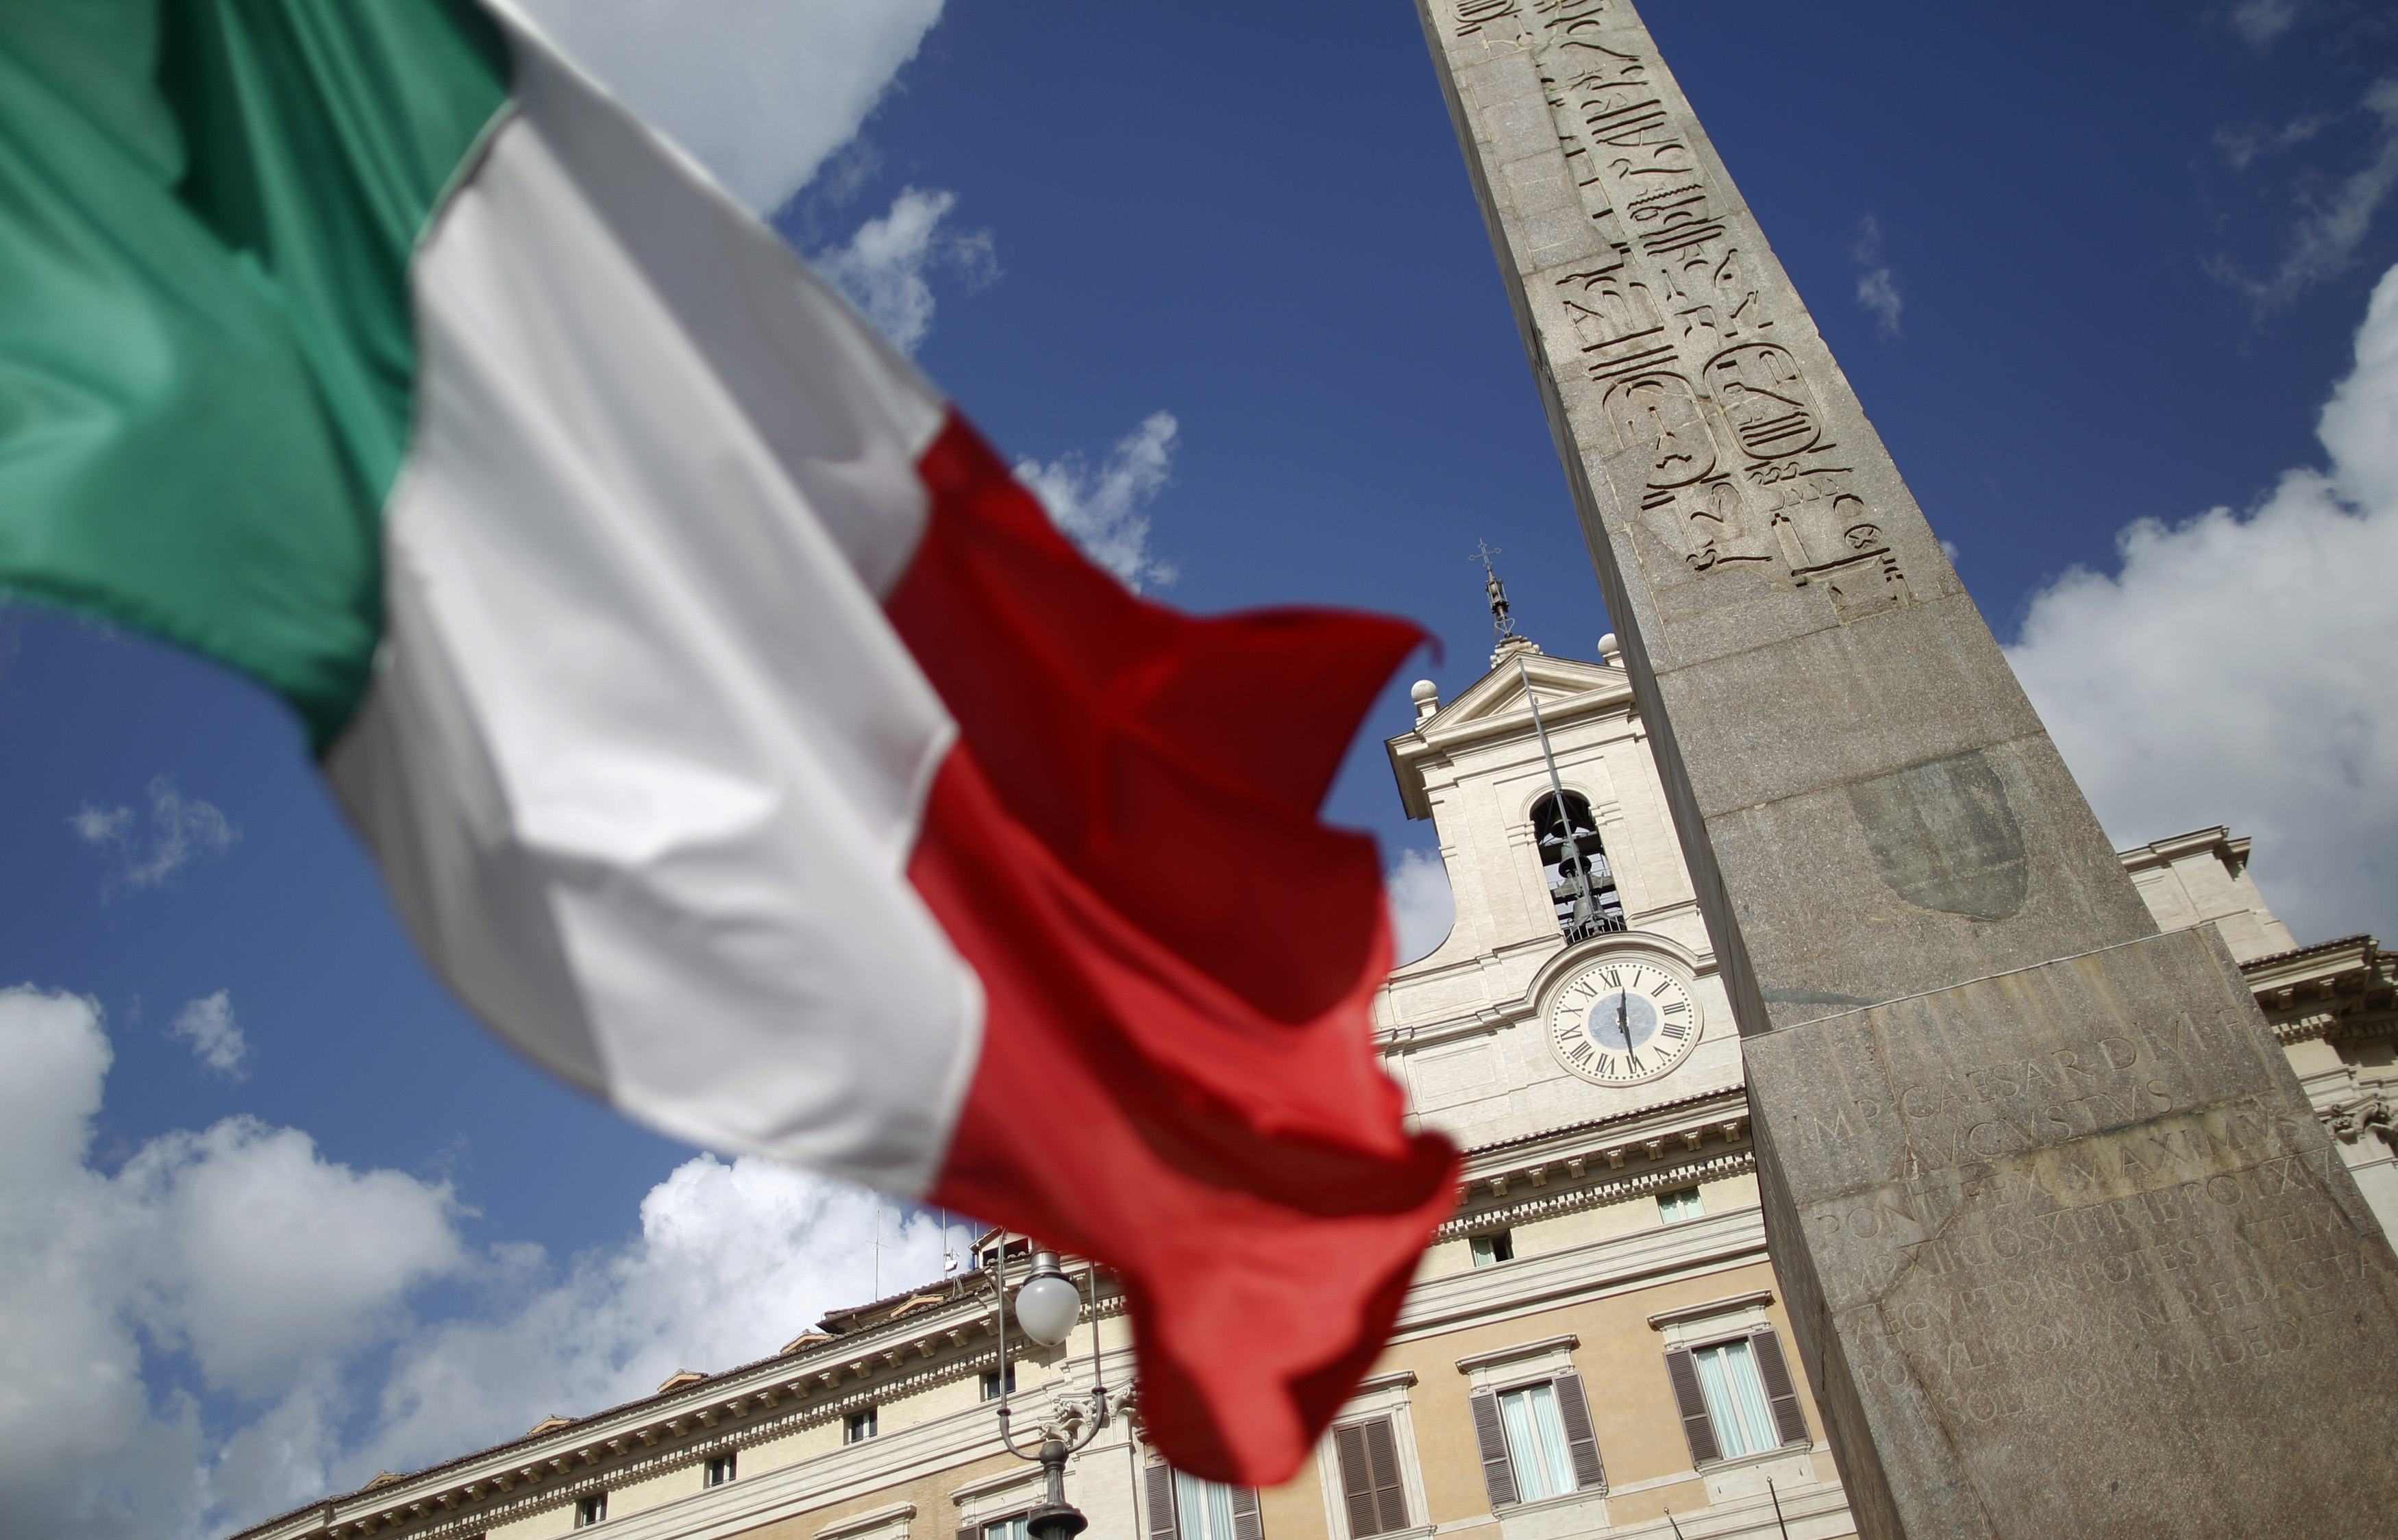 Κομισιόν: Ζητά από την Ιταλία πληροφορίες για τον προϋπολογισμό